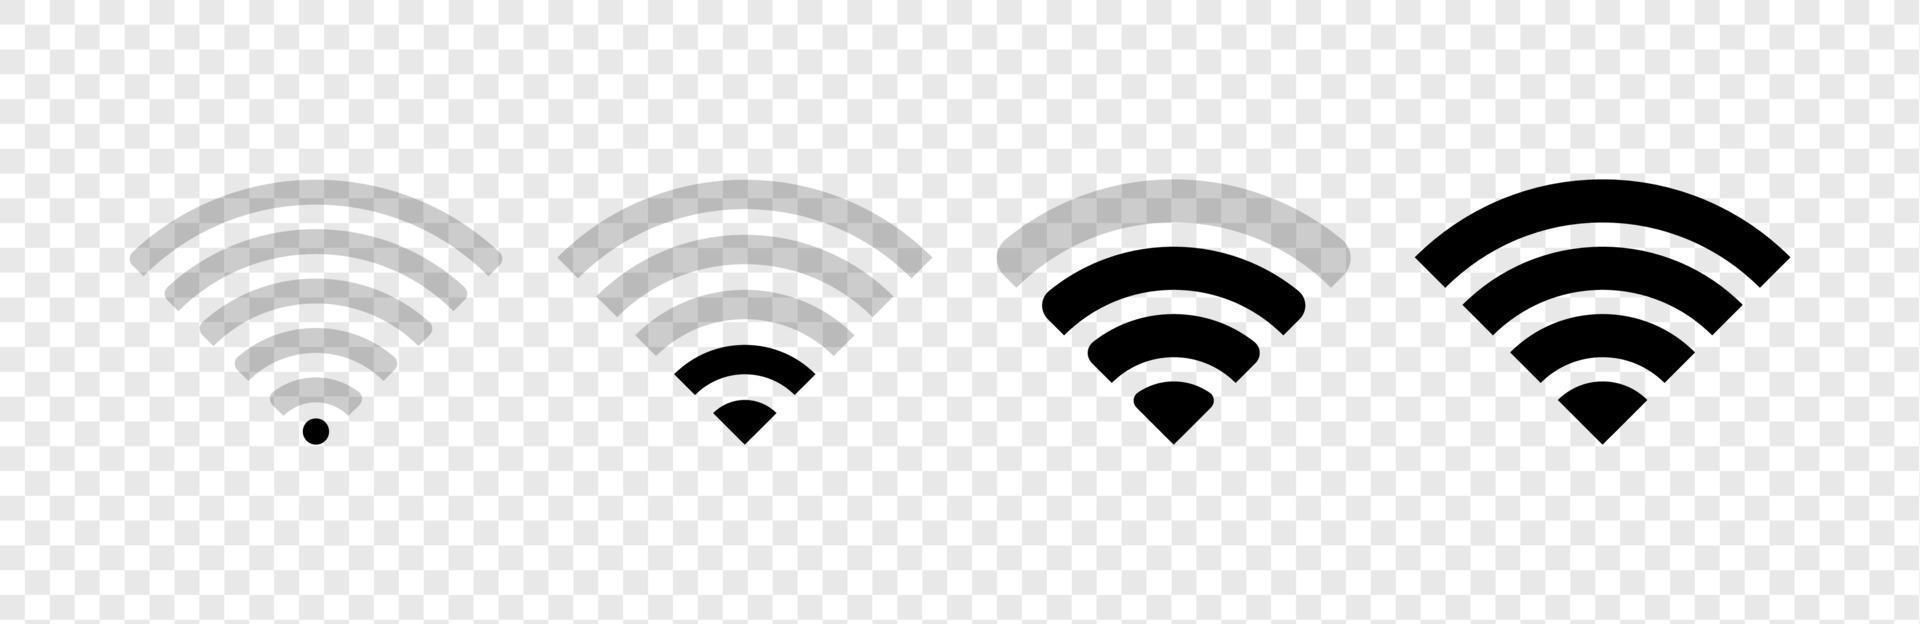 riduzione del segnale. icona wireless e wifi. simbolo del segnale wi-fi. connessione internet. raccolta di accesso remoto a Internet - vettore moderno.